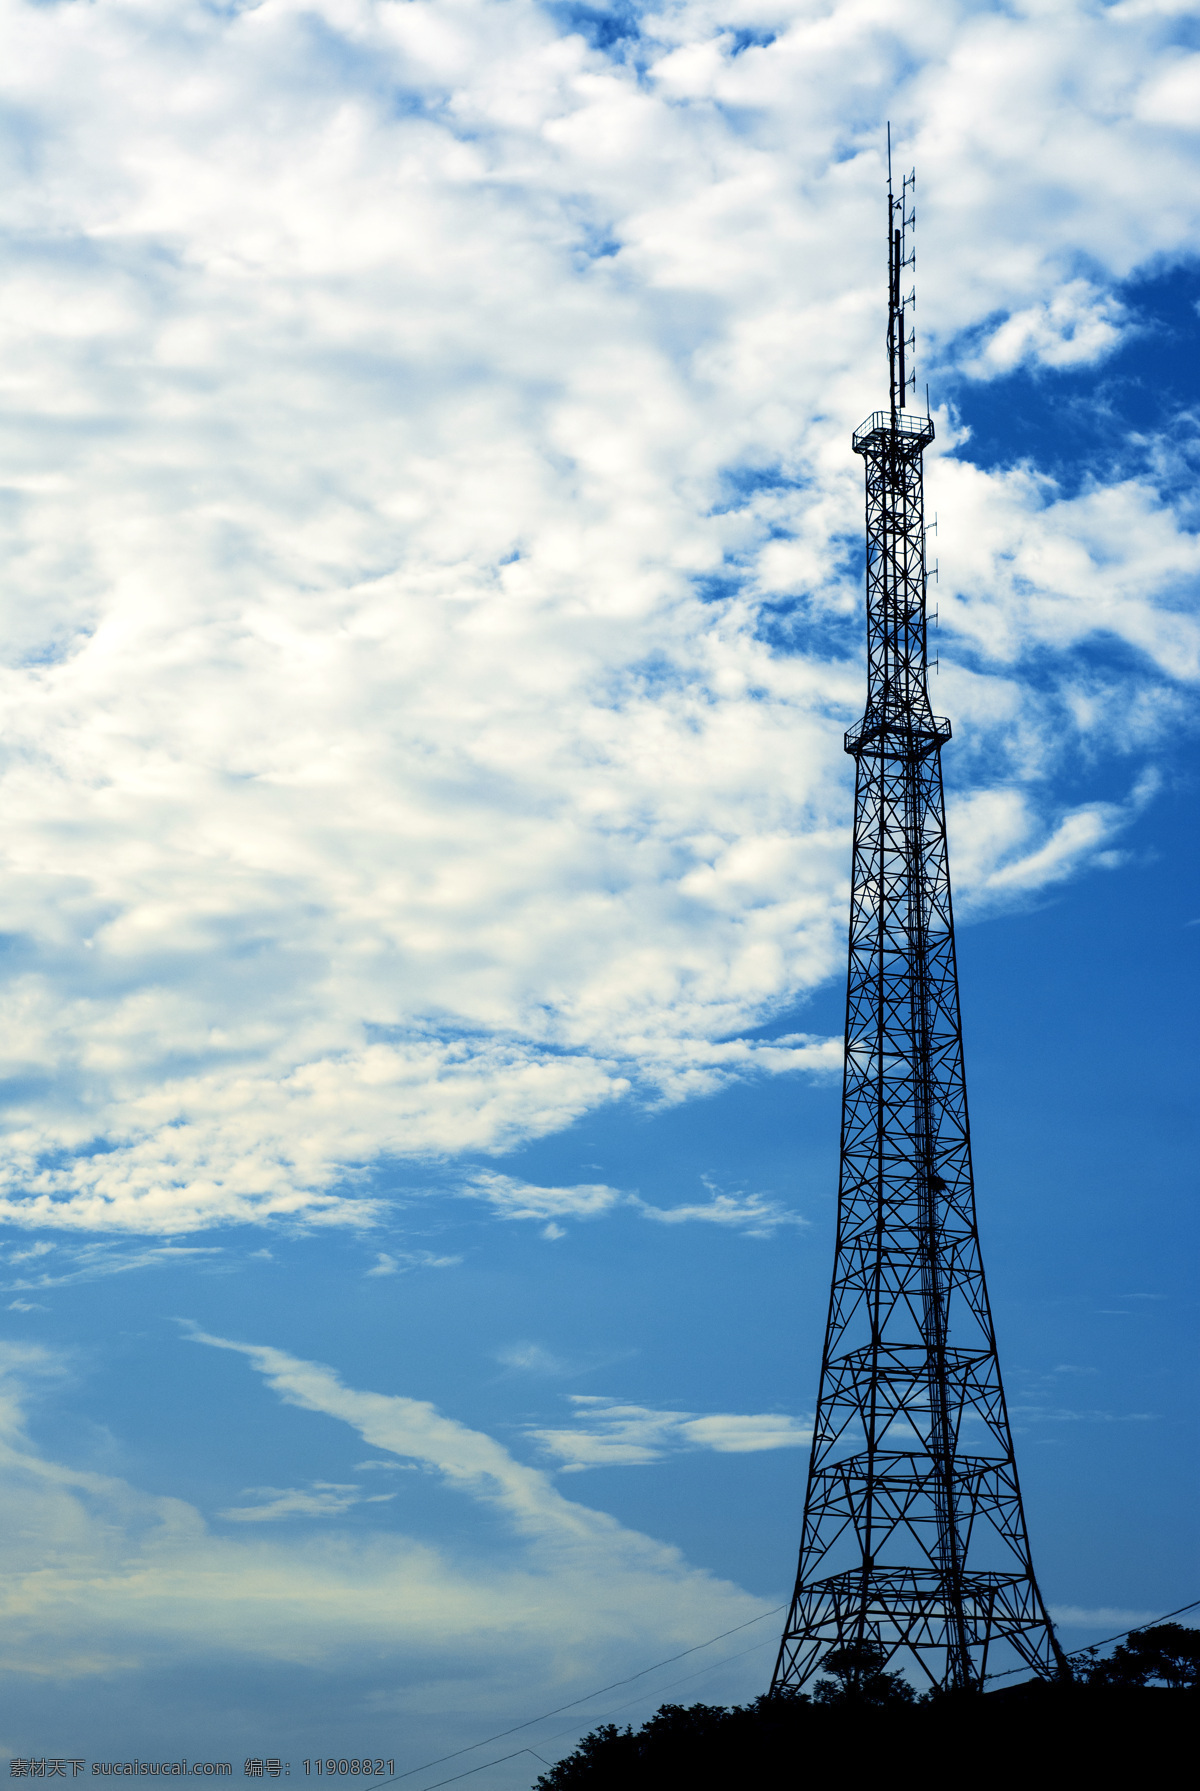 蓝天 下 电视塔 逆光电视塔 白云 山上铁塔 信号塔 高架电线塔 现代科技 工业生产